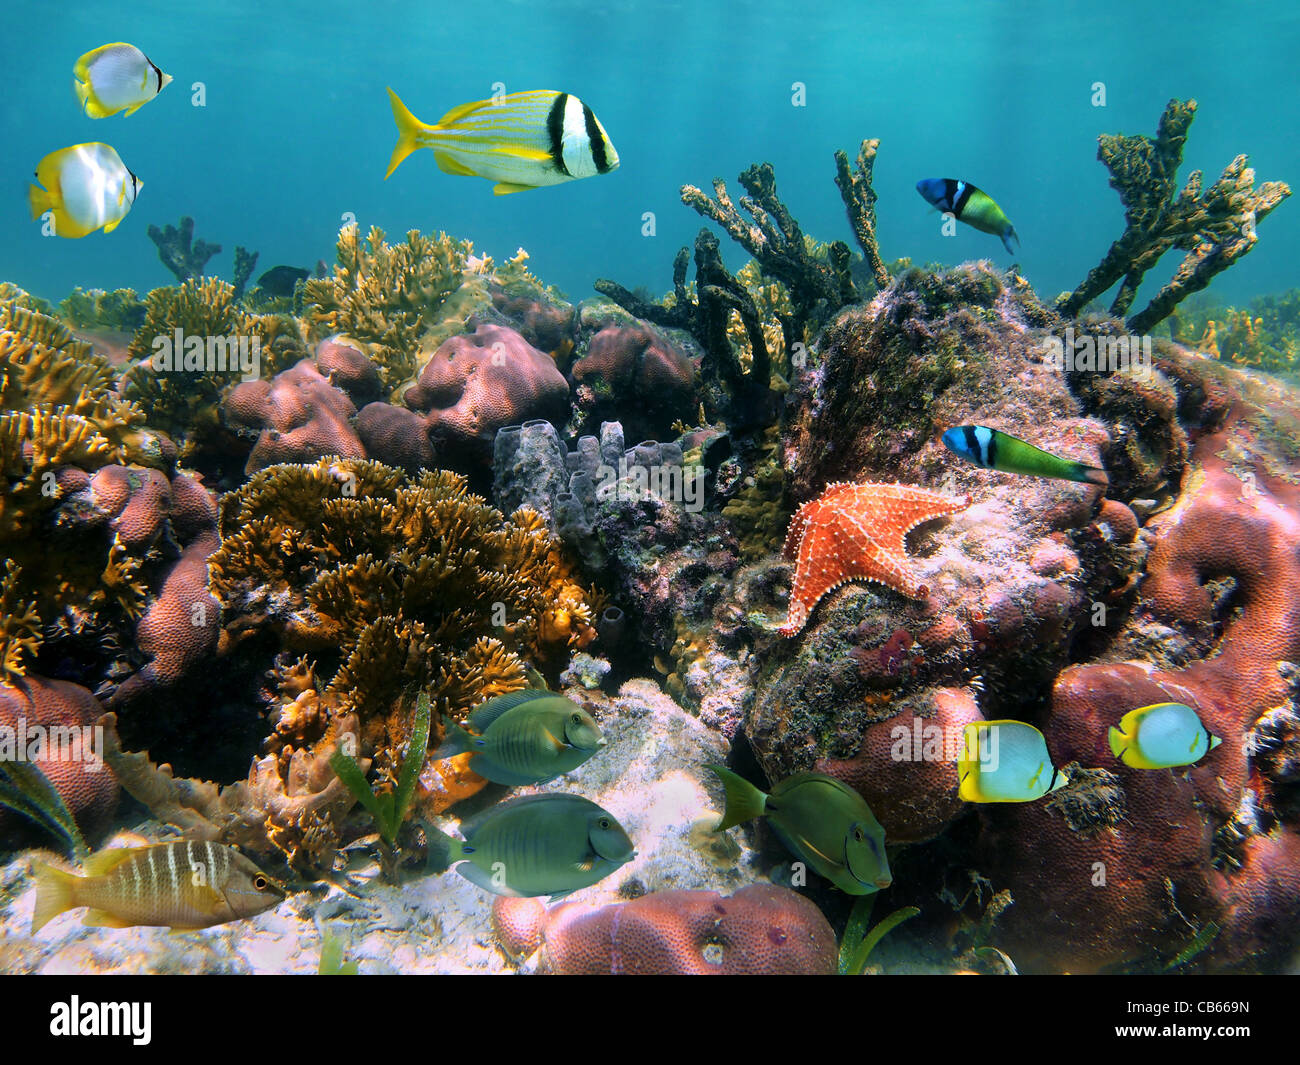 Vie marine colorée dans un récif de corail avec des poissons tropicaux et l'étoile de mer, mer des Caraïbes Banque D'Images